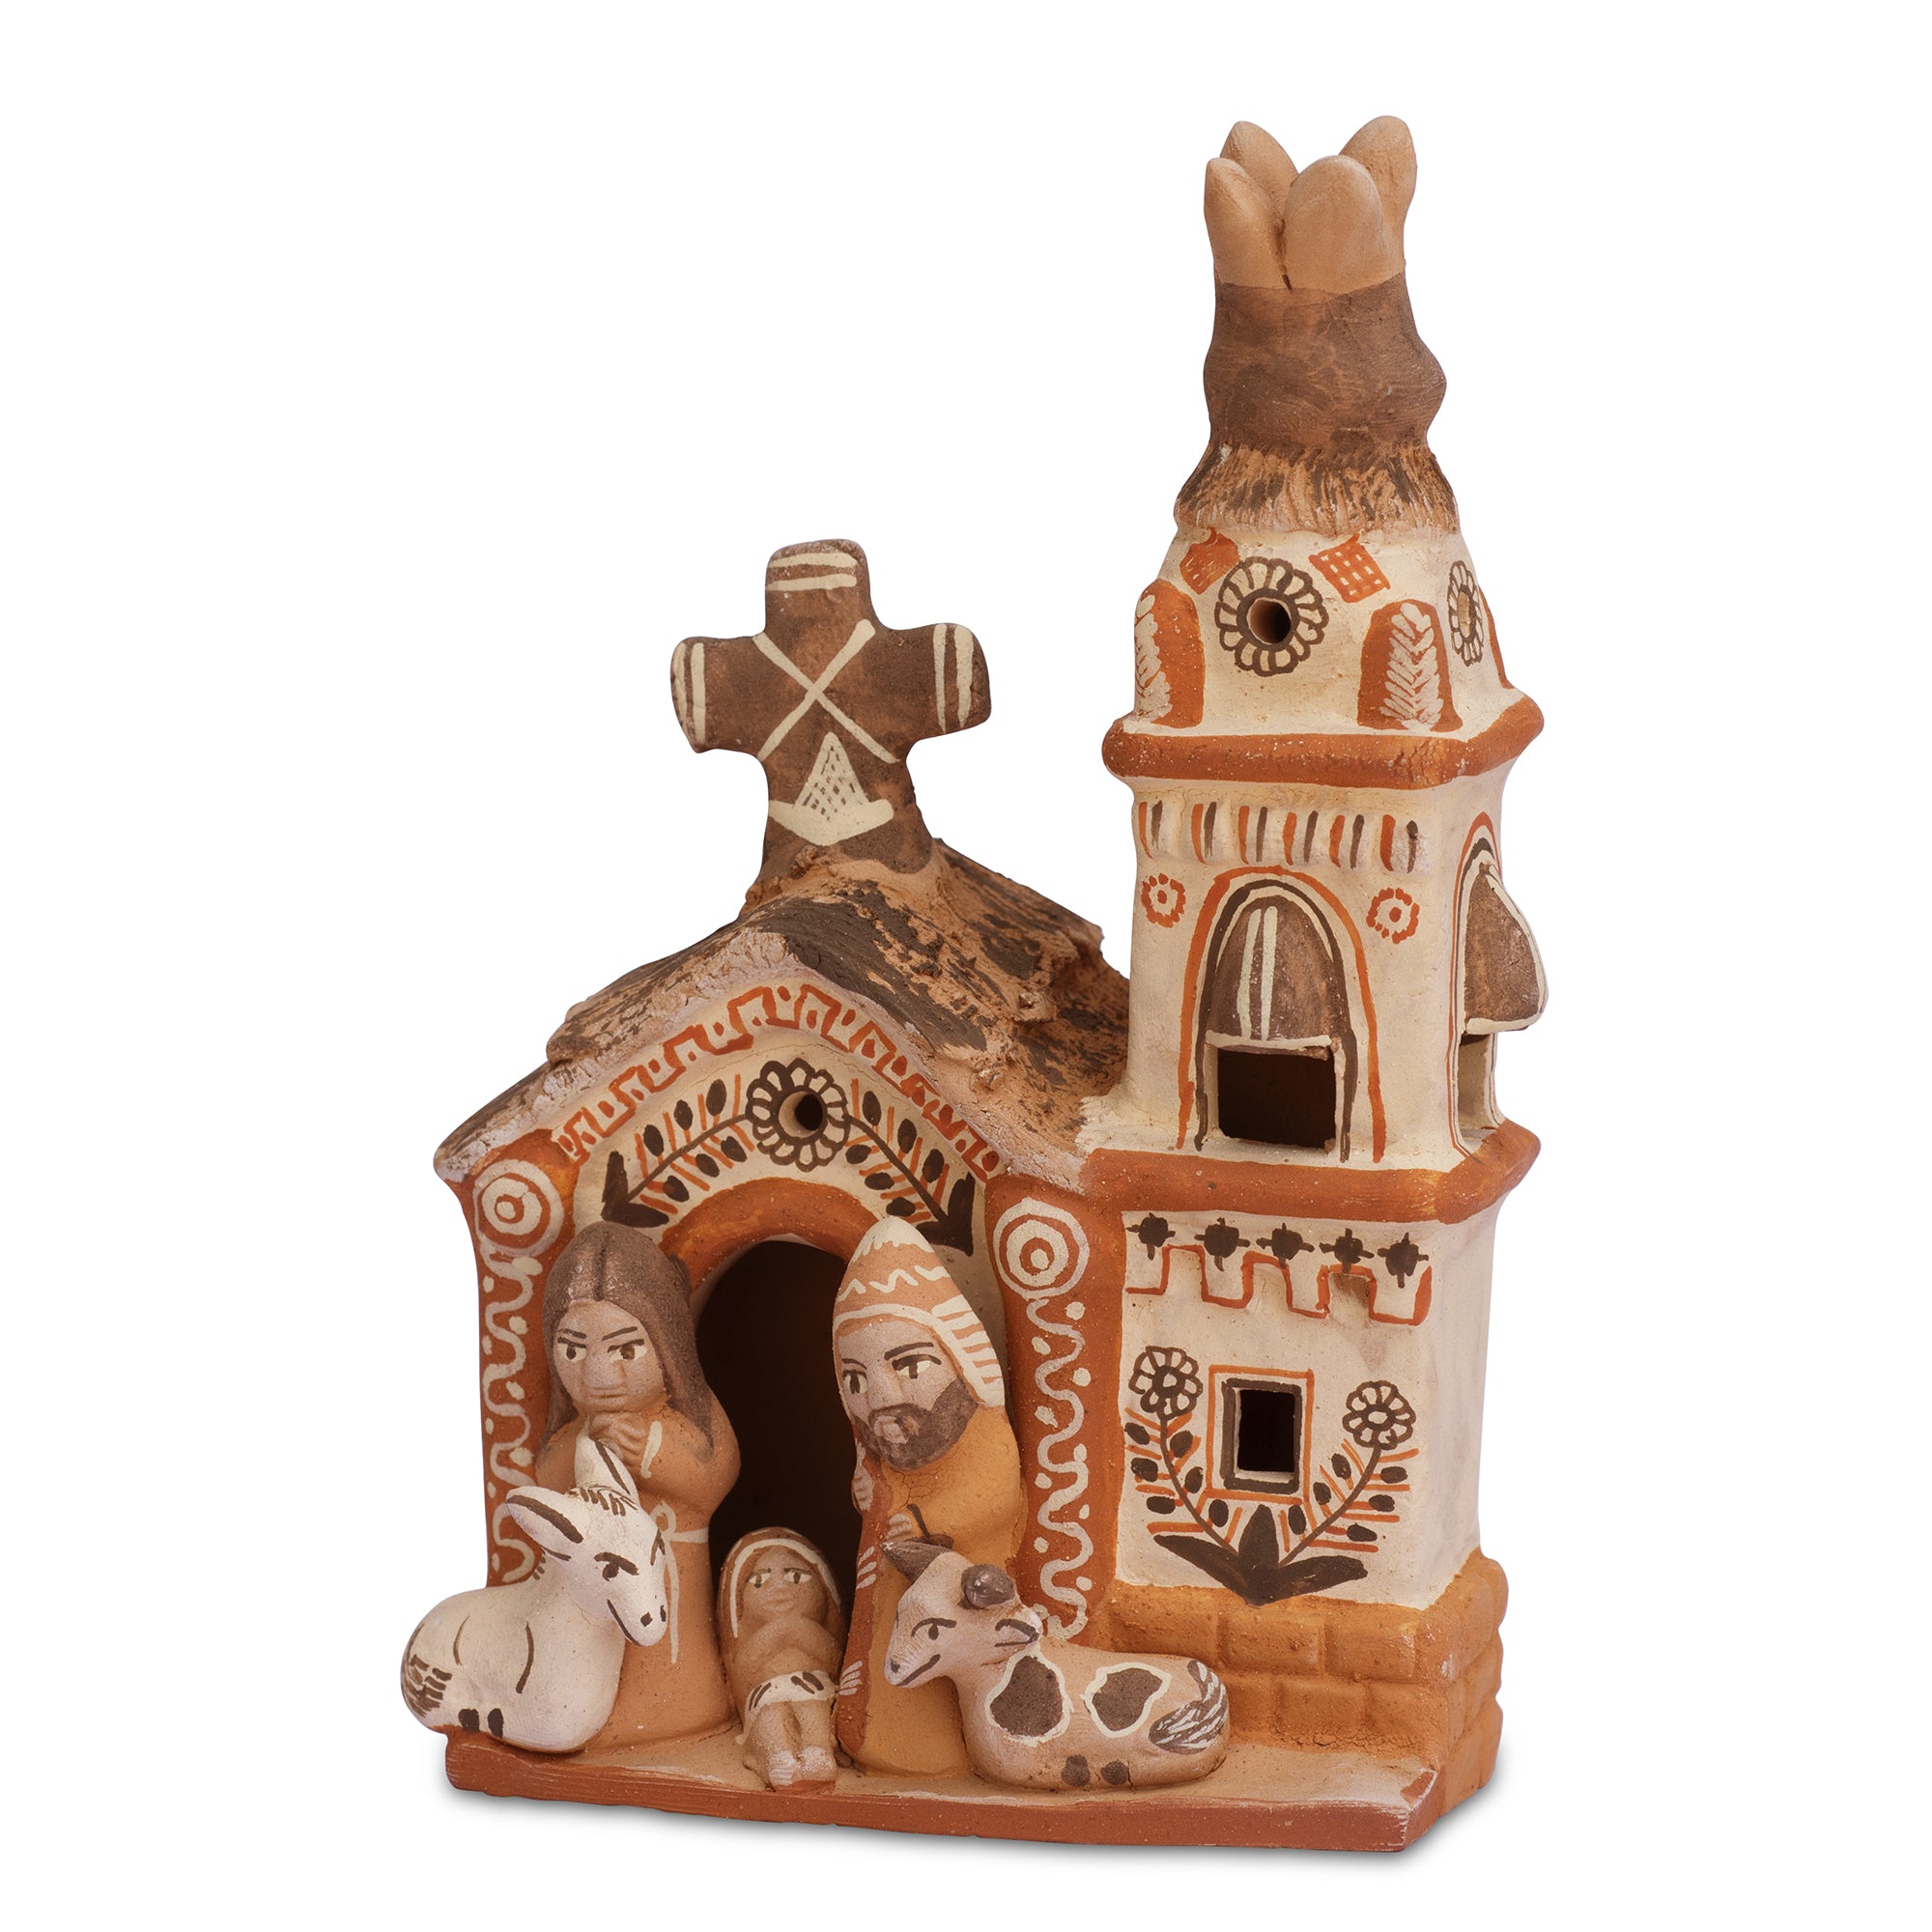 Nativity Church - Ceramic Sculpture - Small 5.5"H